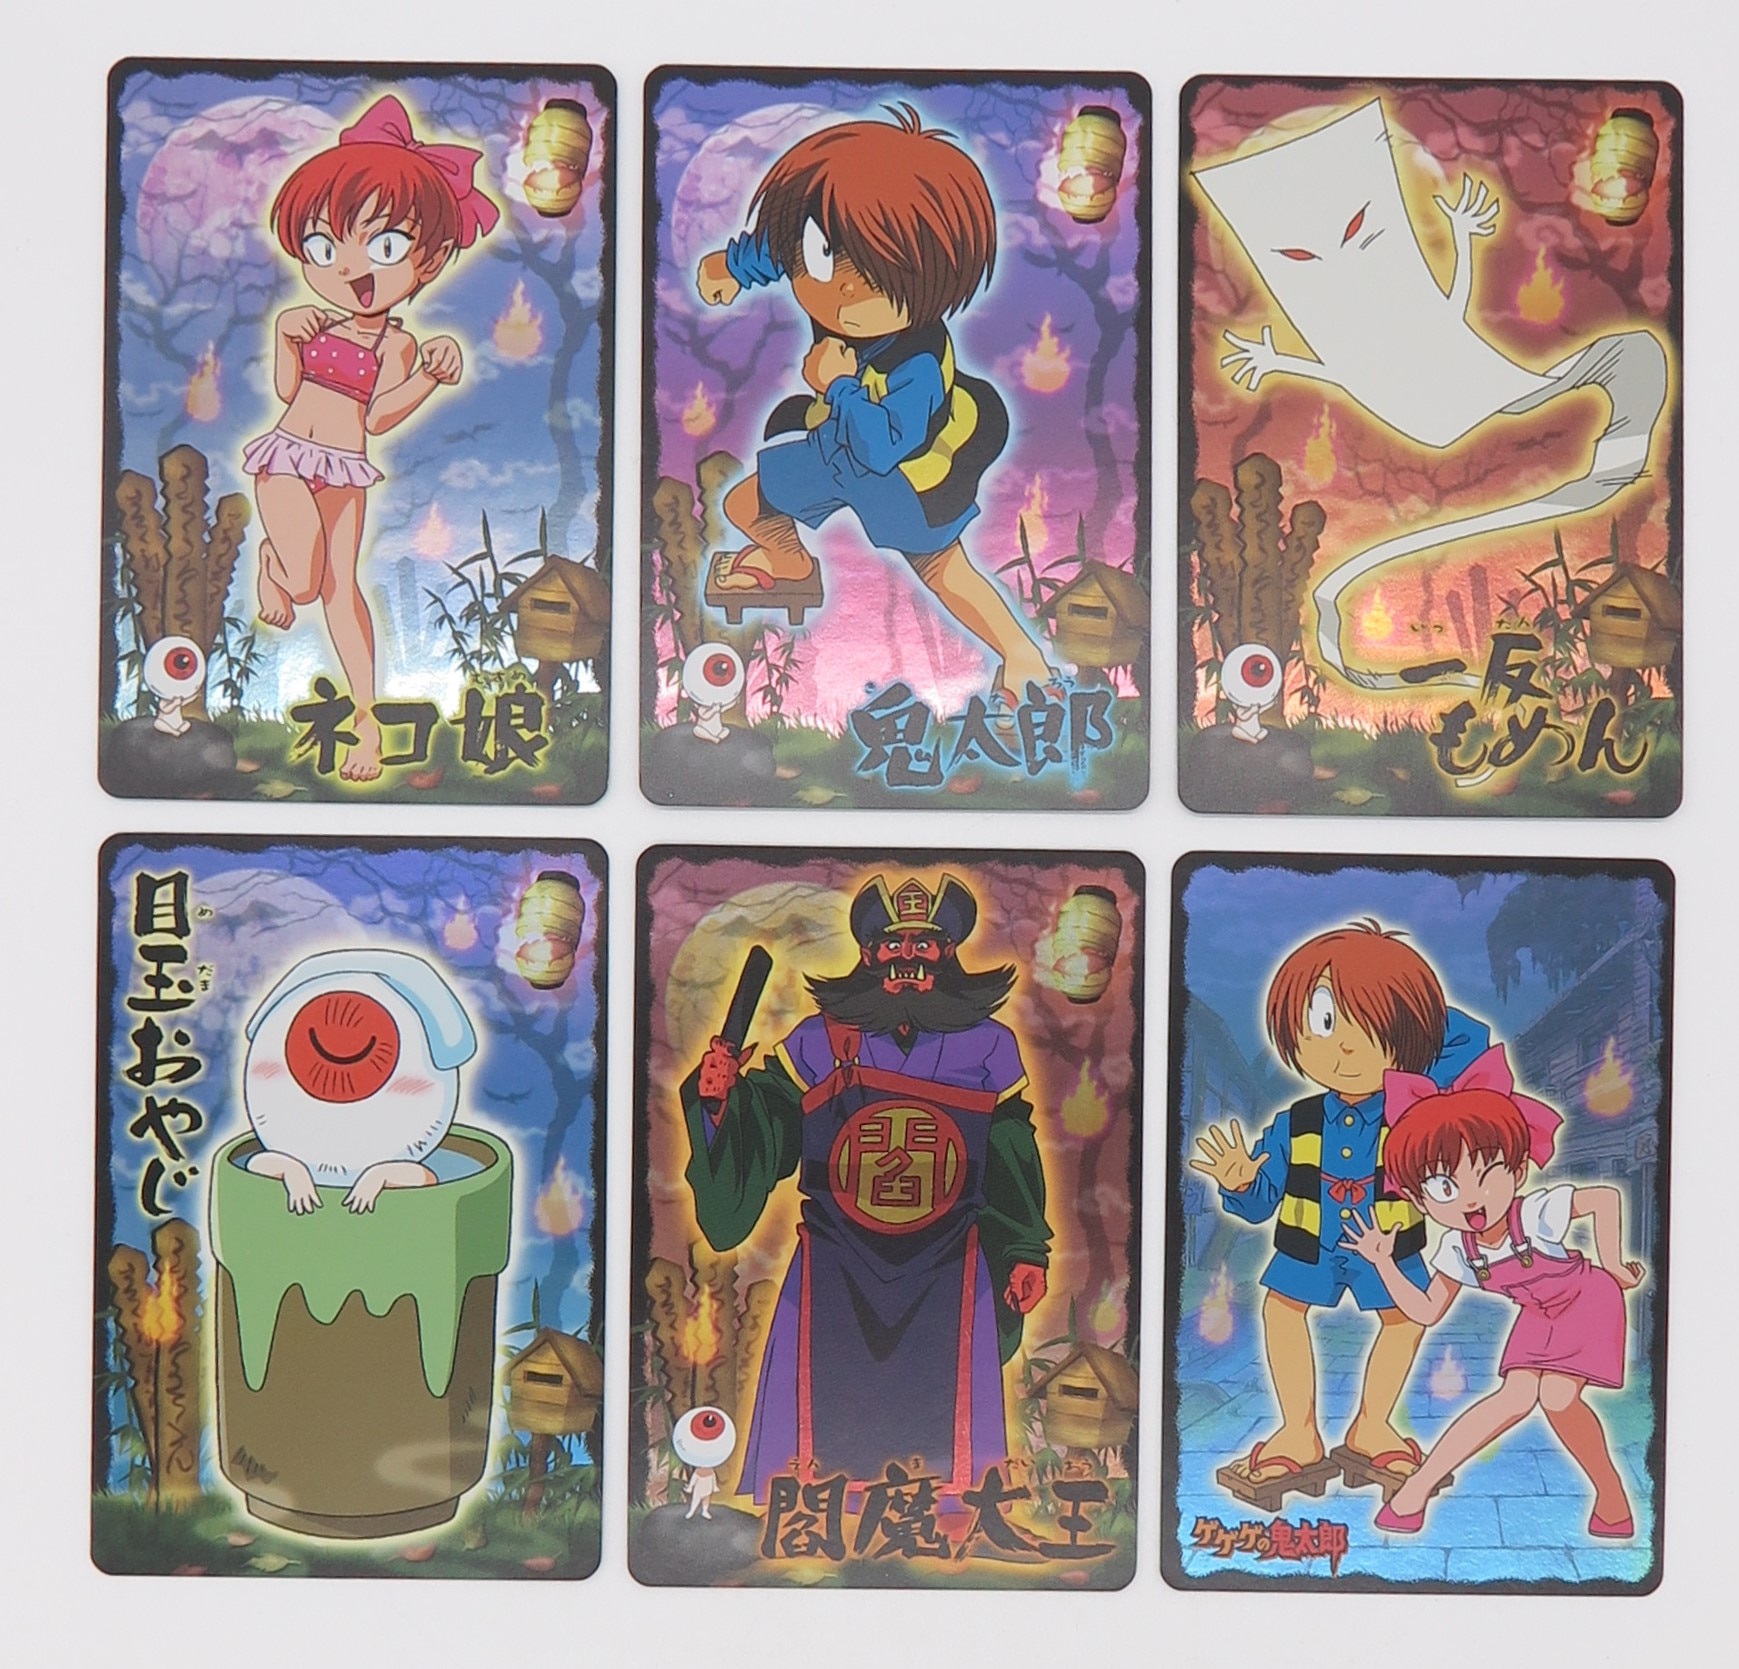 ゲゲゲの鬼太郎 5期 妖怪カード大図鑑 ネコの巻 - カード